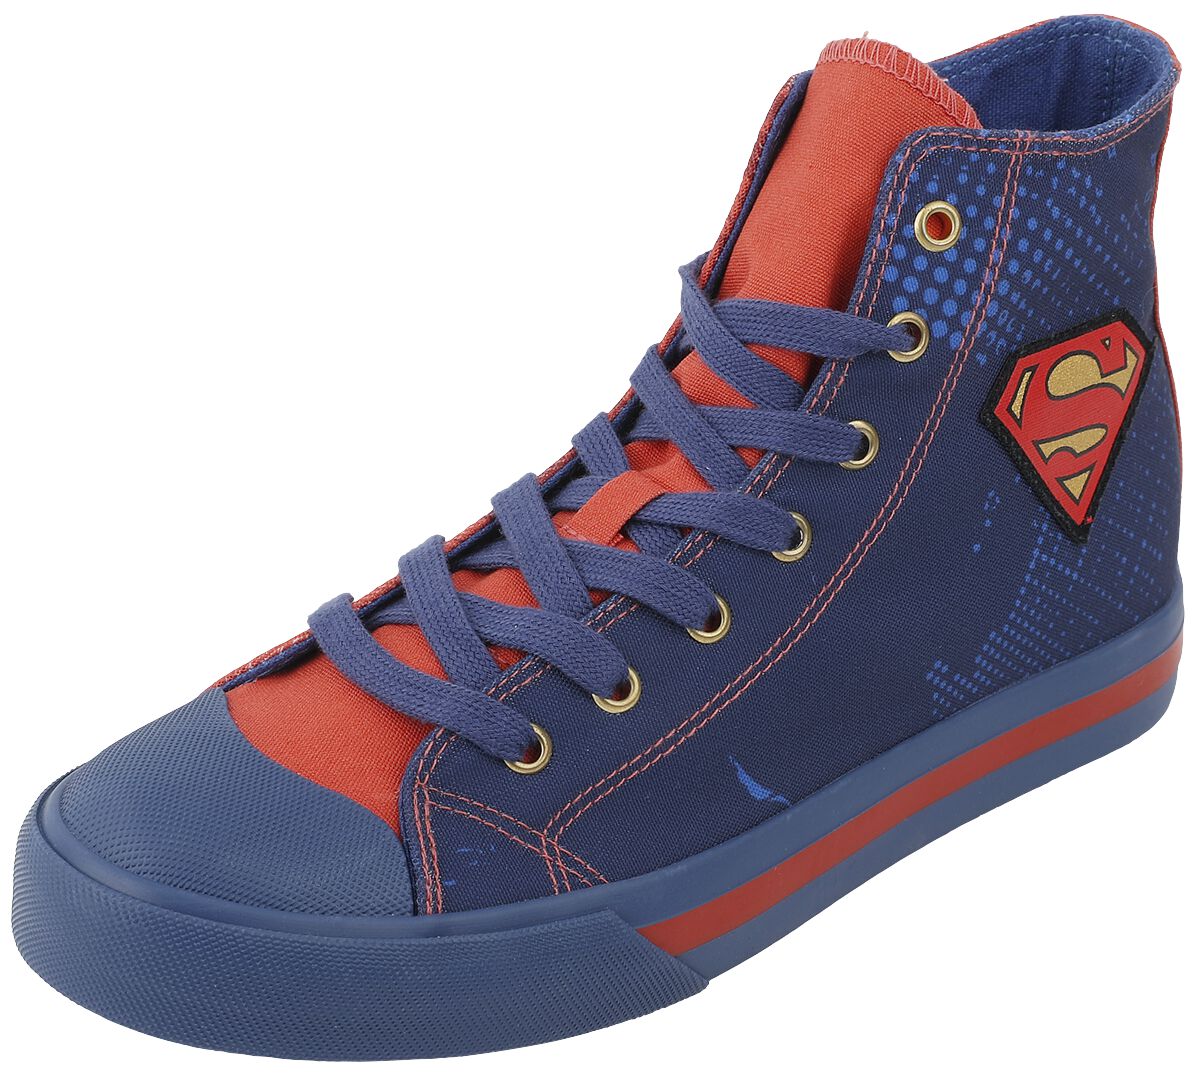 Image of Sneakers alte di Superman - EU37 a EU39 - Unisex - blu/rosso